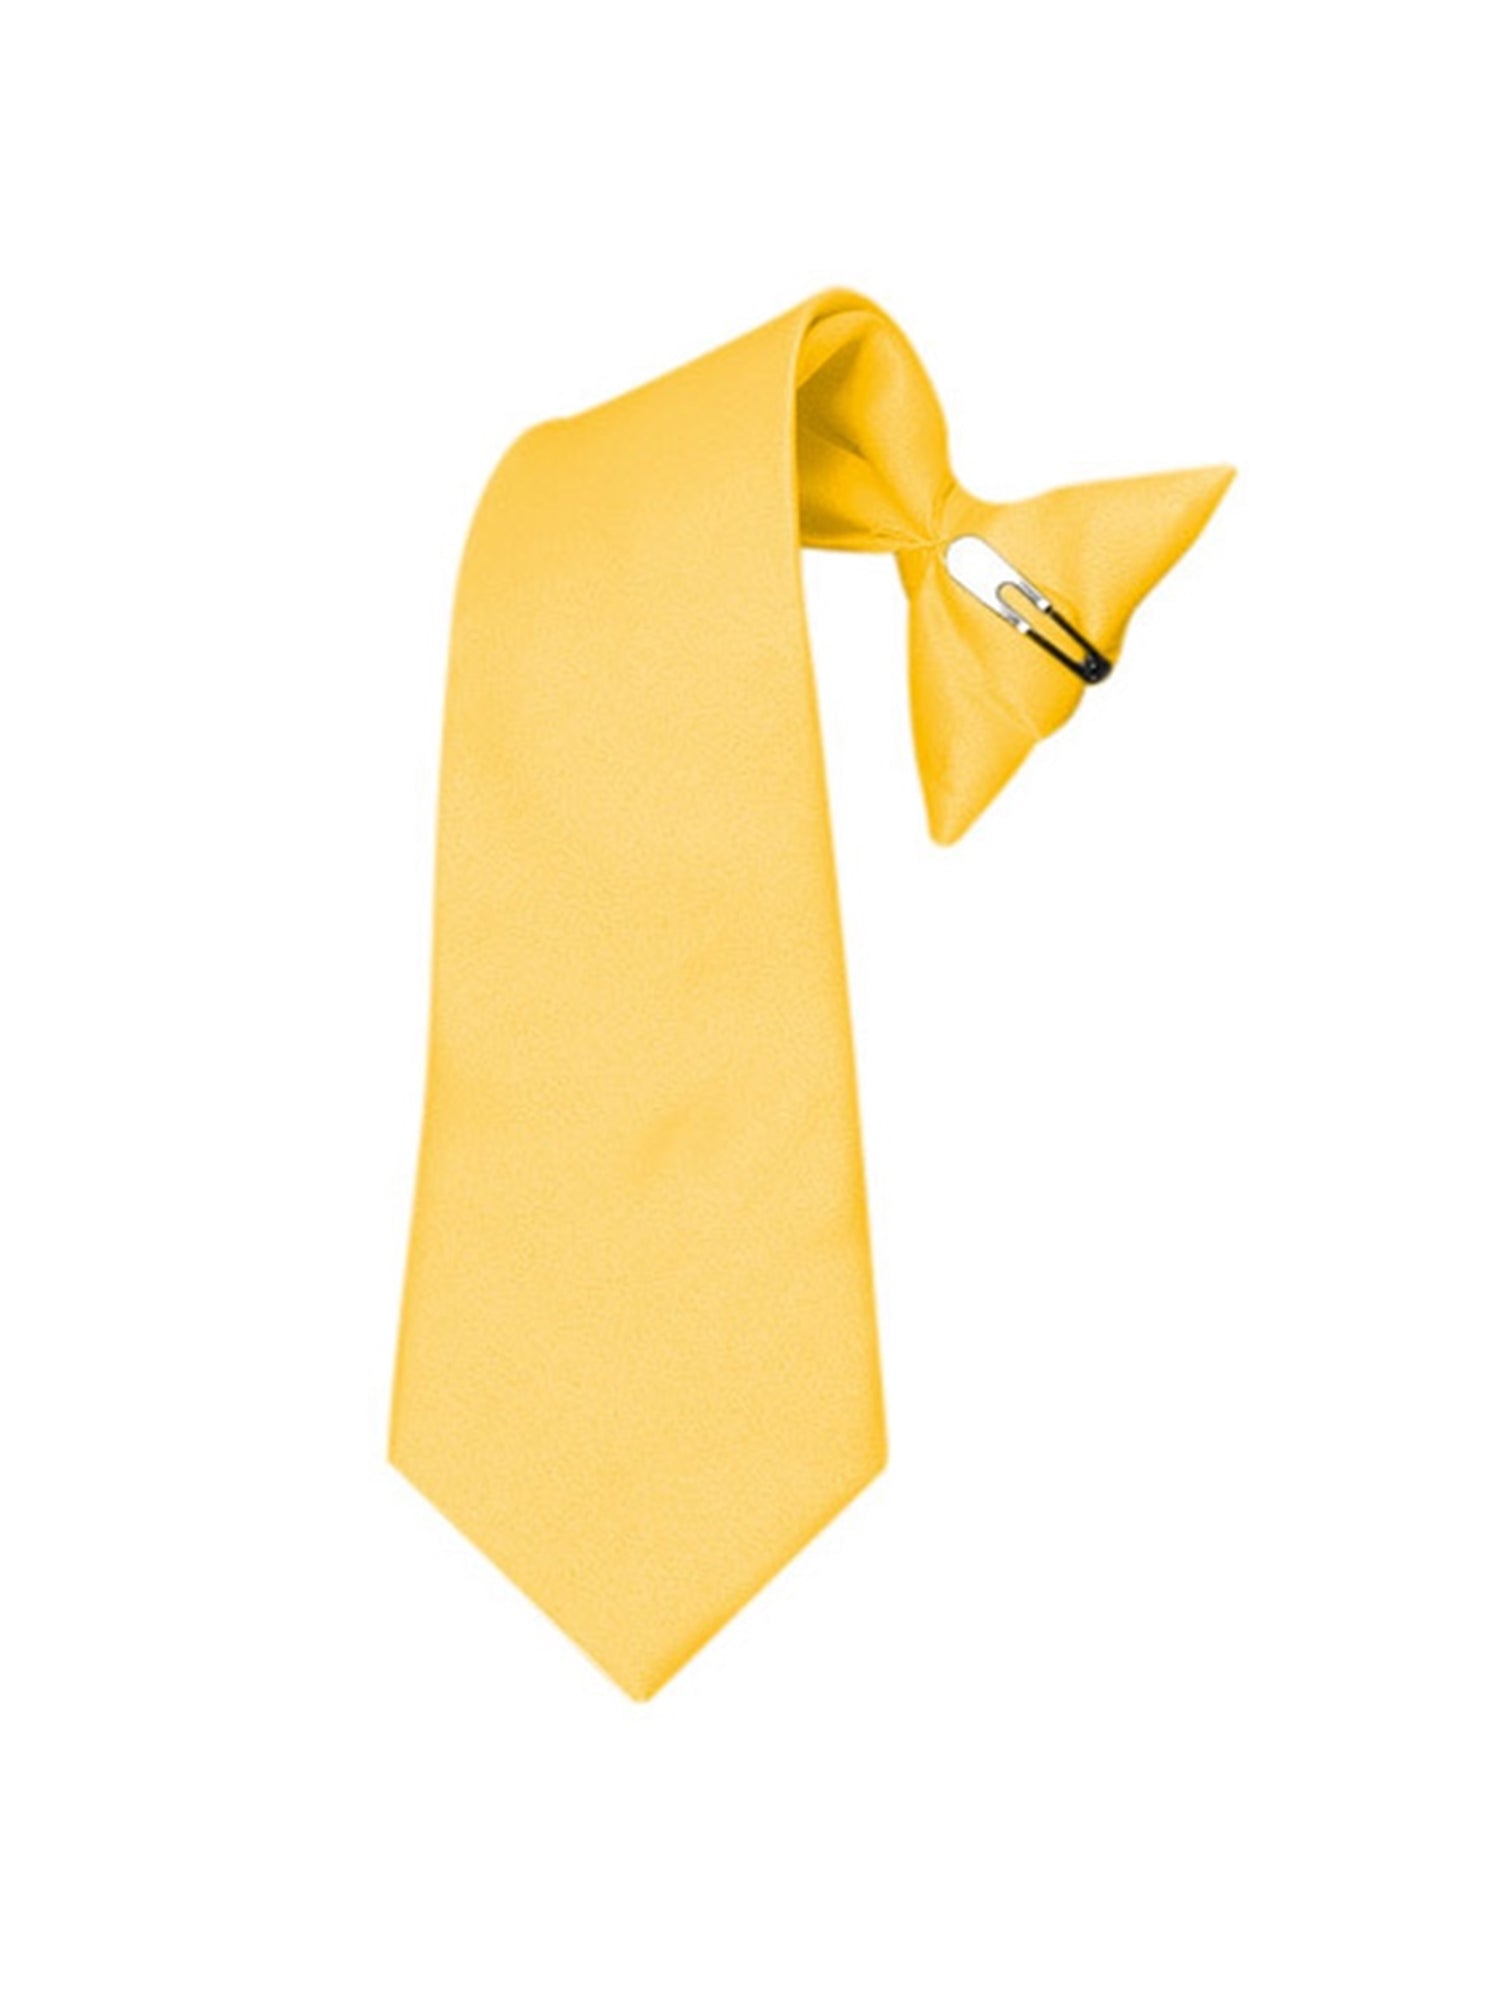 Boy's Solid Color Pre-tied Clip On Neck Tie Neck Tie TheDapperTie Yellow 8" x 2.5" 